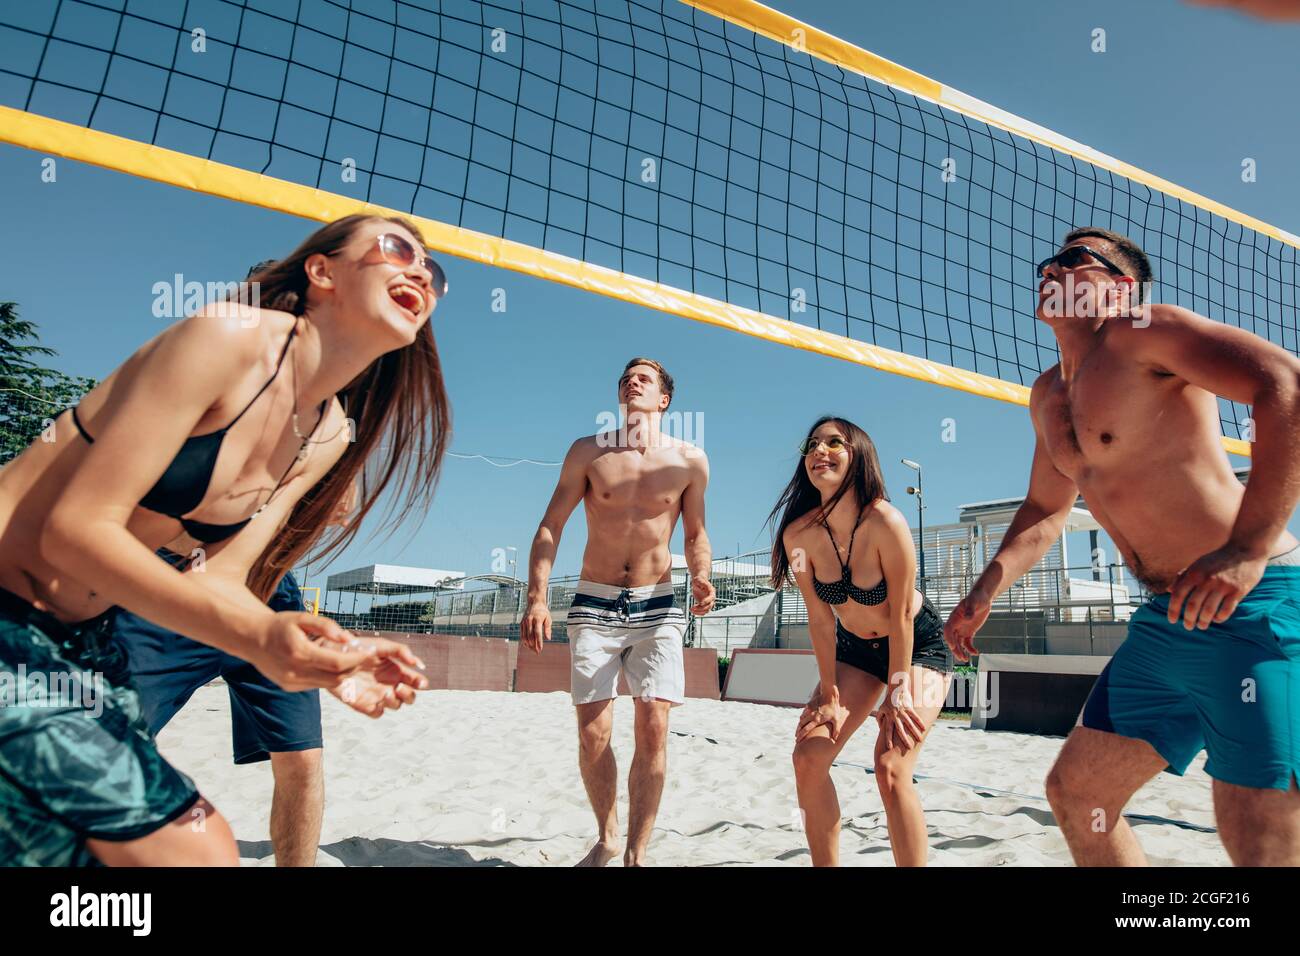 Groupe de jeunes hommes et femmes jouant au Beach-volley sur le sable. Vacances d'été, sport, jeux et amitié concept - jouer à valhesen plein air Banque D'Images